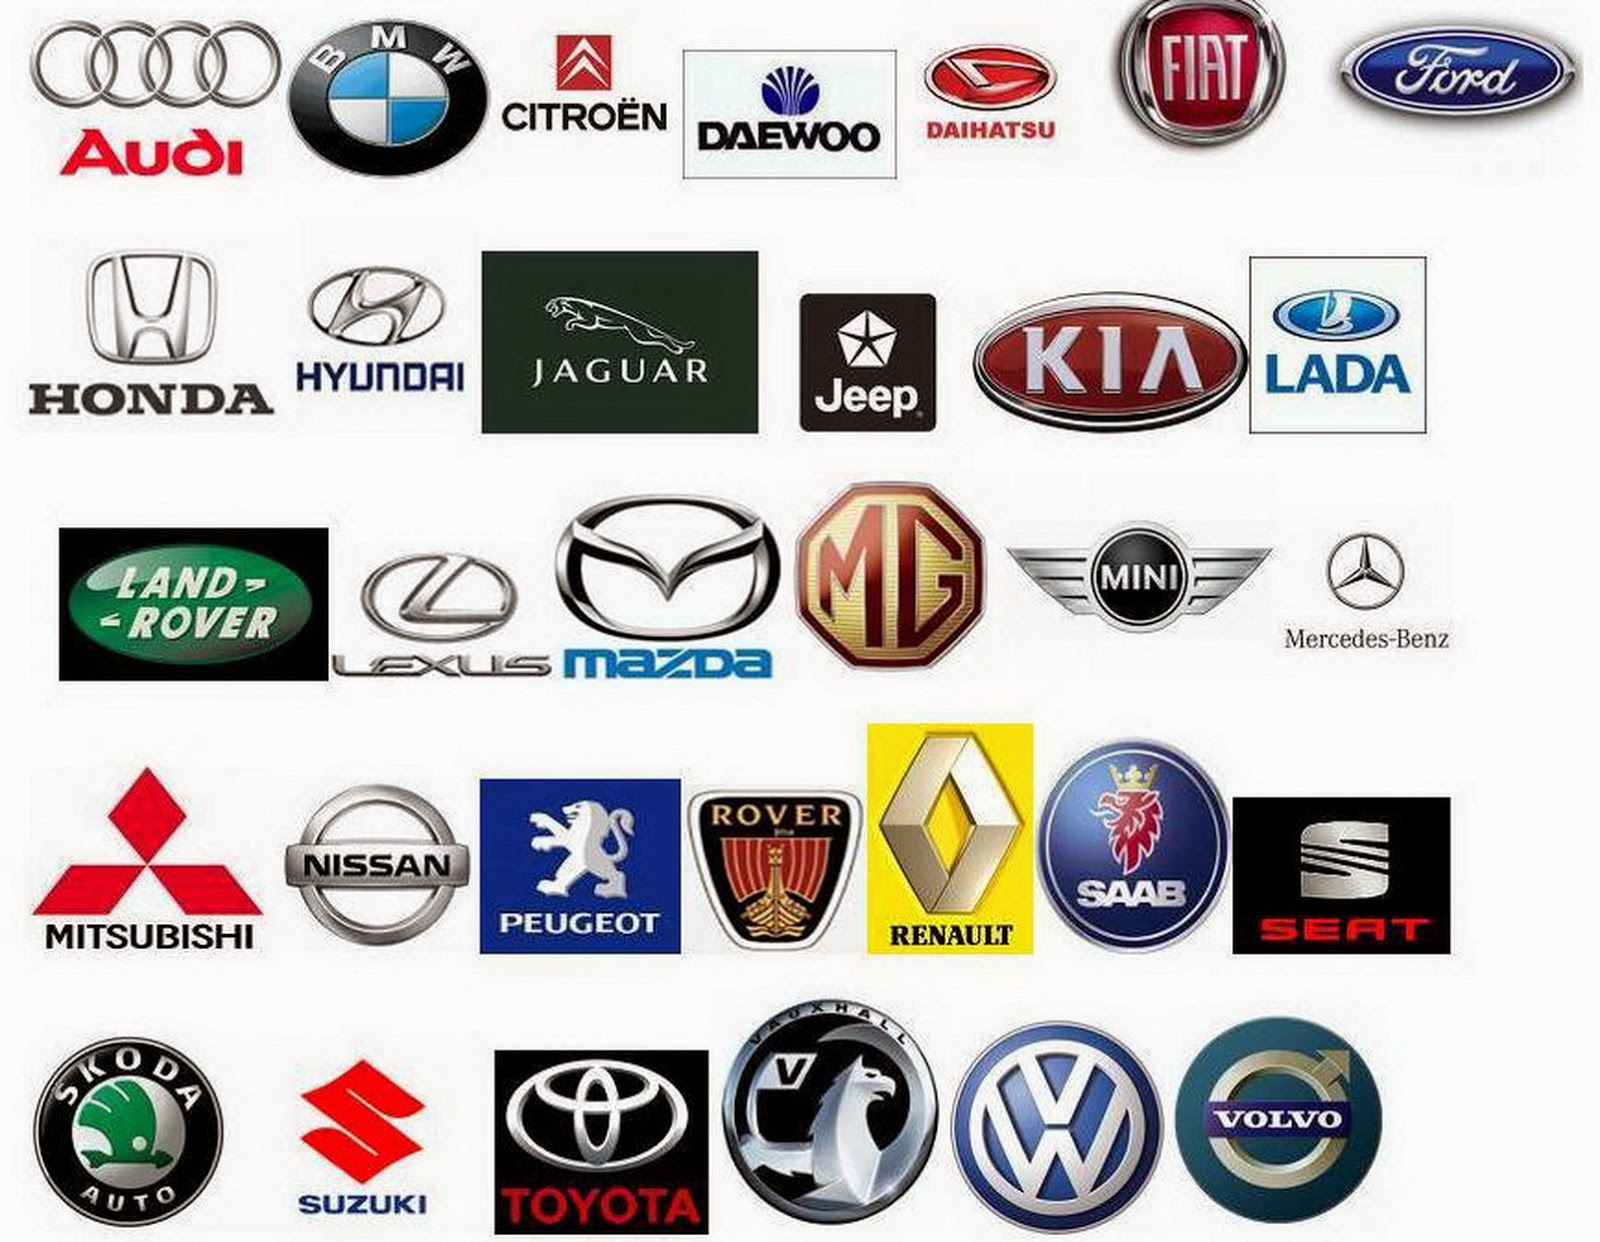 Car Logos And Brands Cars Show Logos